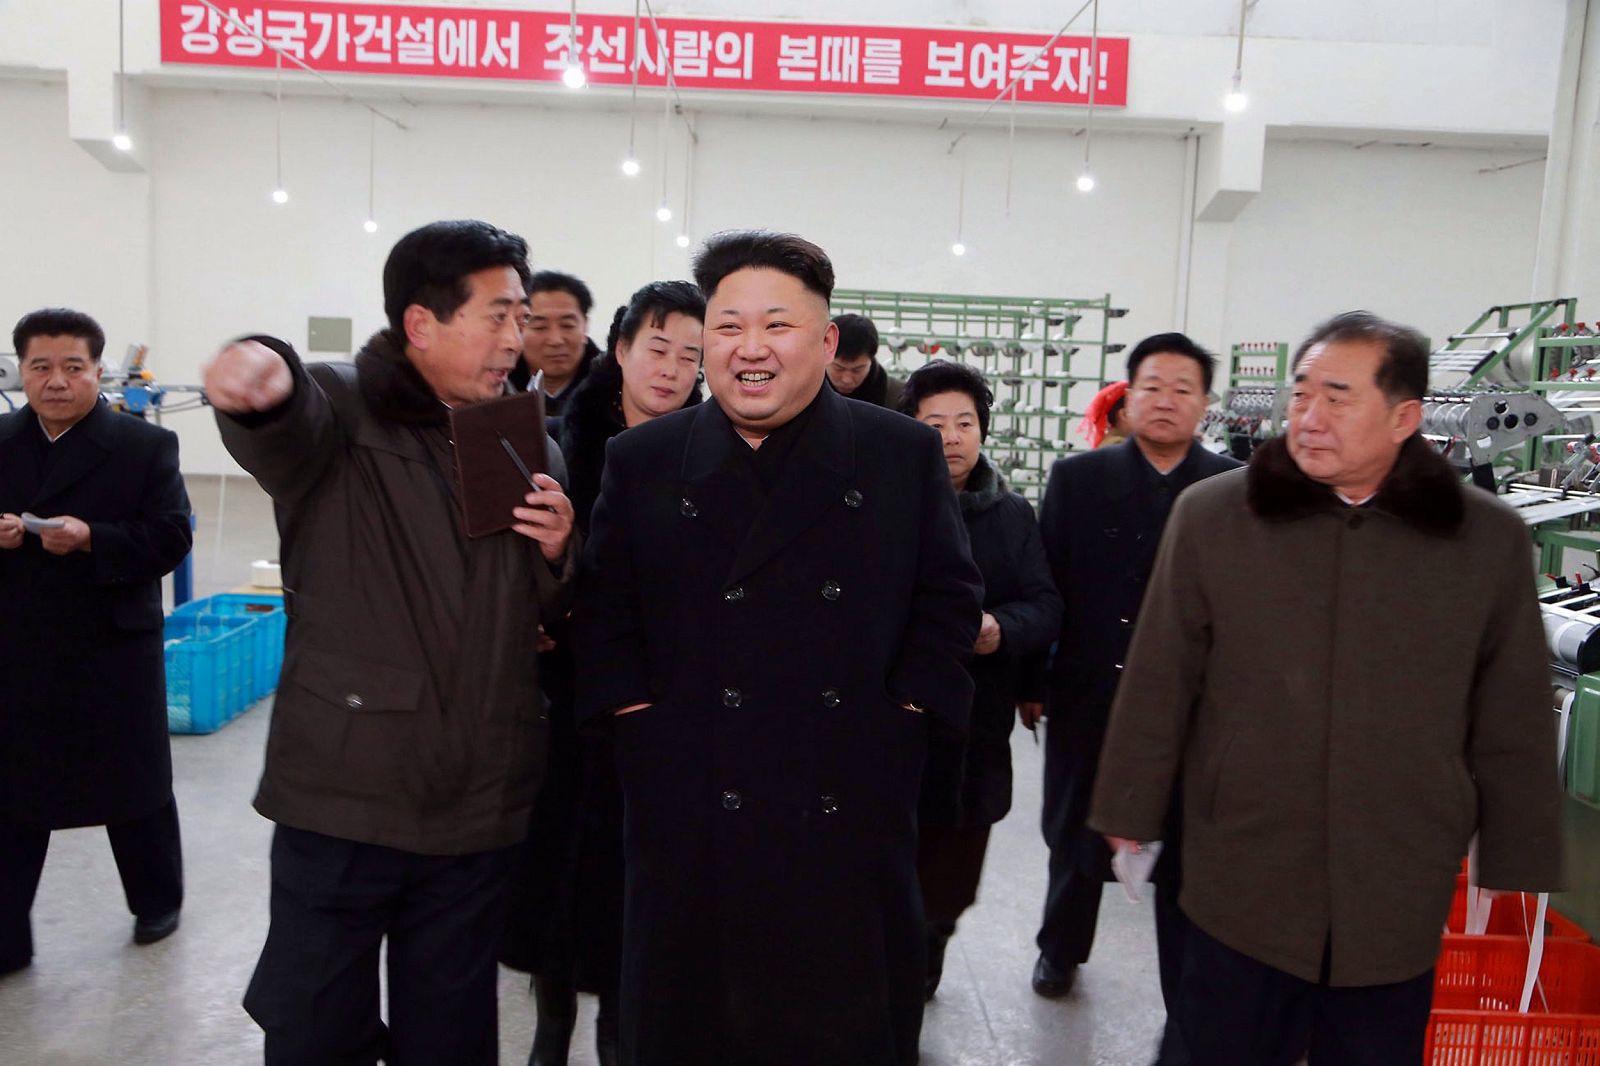 Imagen publicada por la agencia oficial de noticias norcoreana que muestra al dictador Kim Jong-Un visitando una fábrica textil.